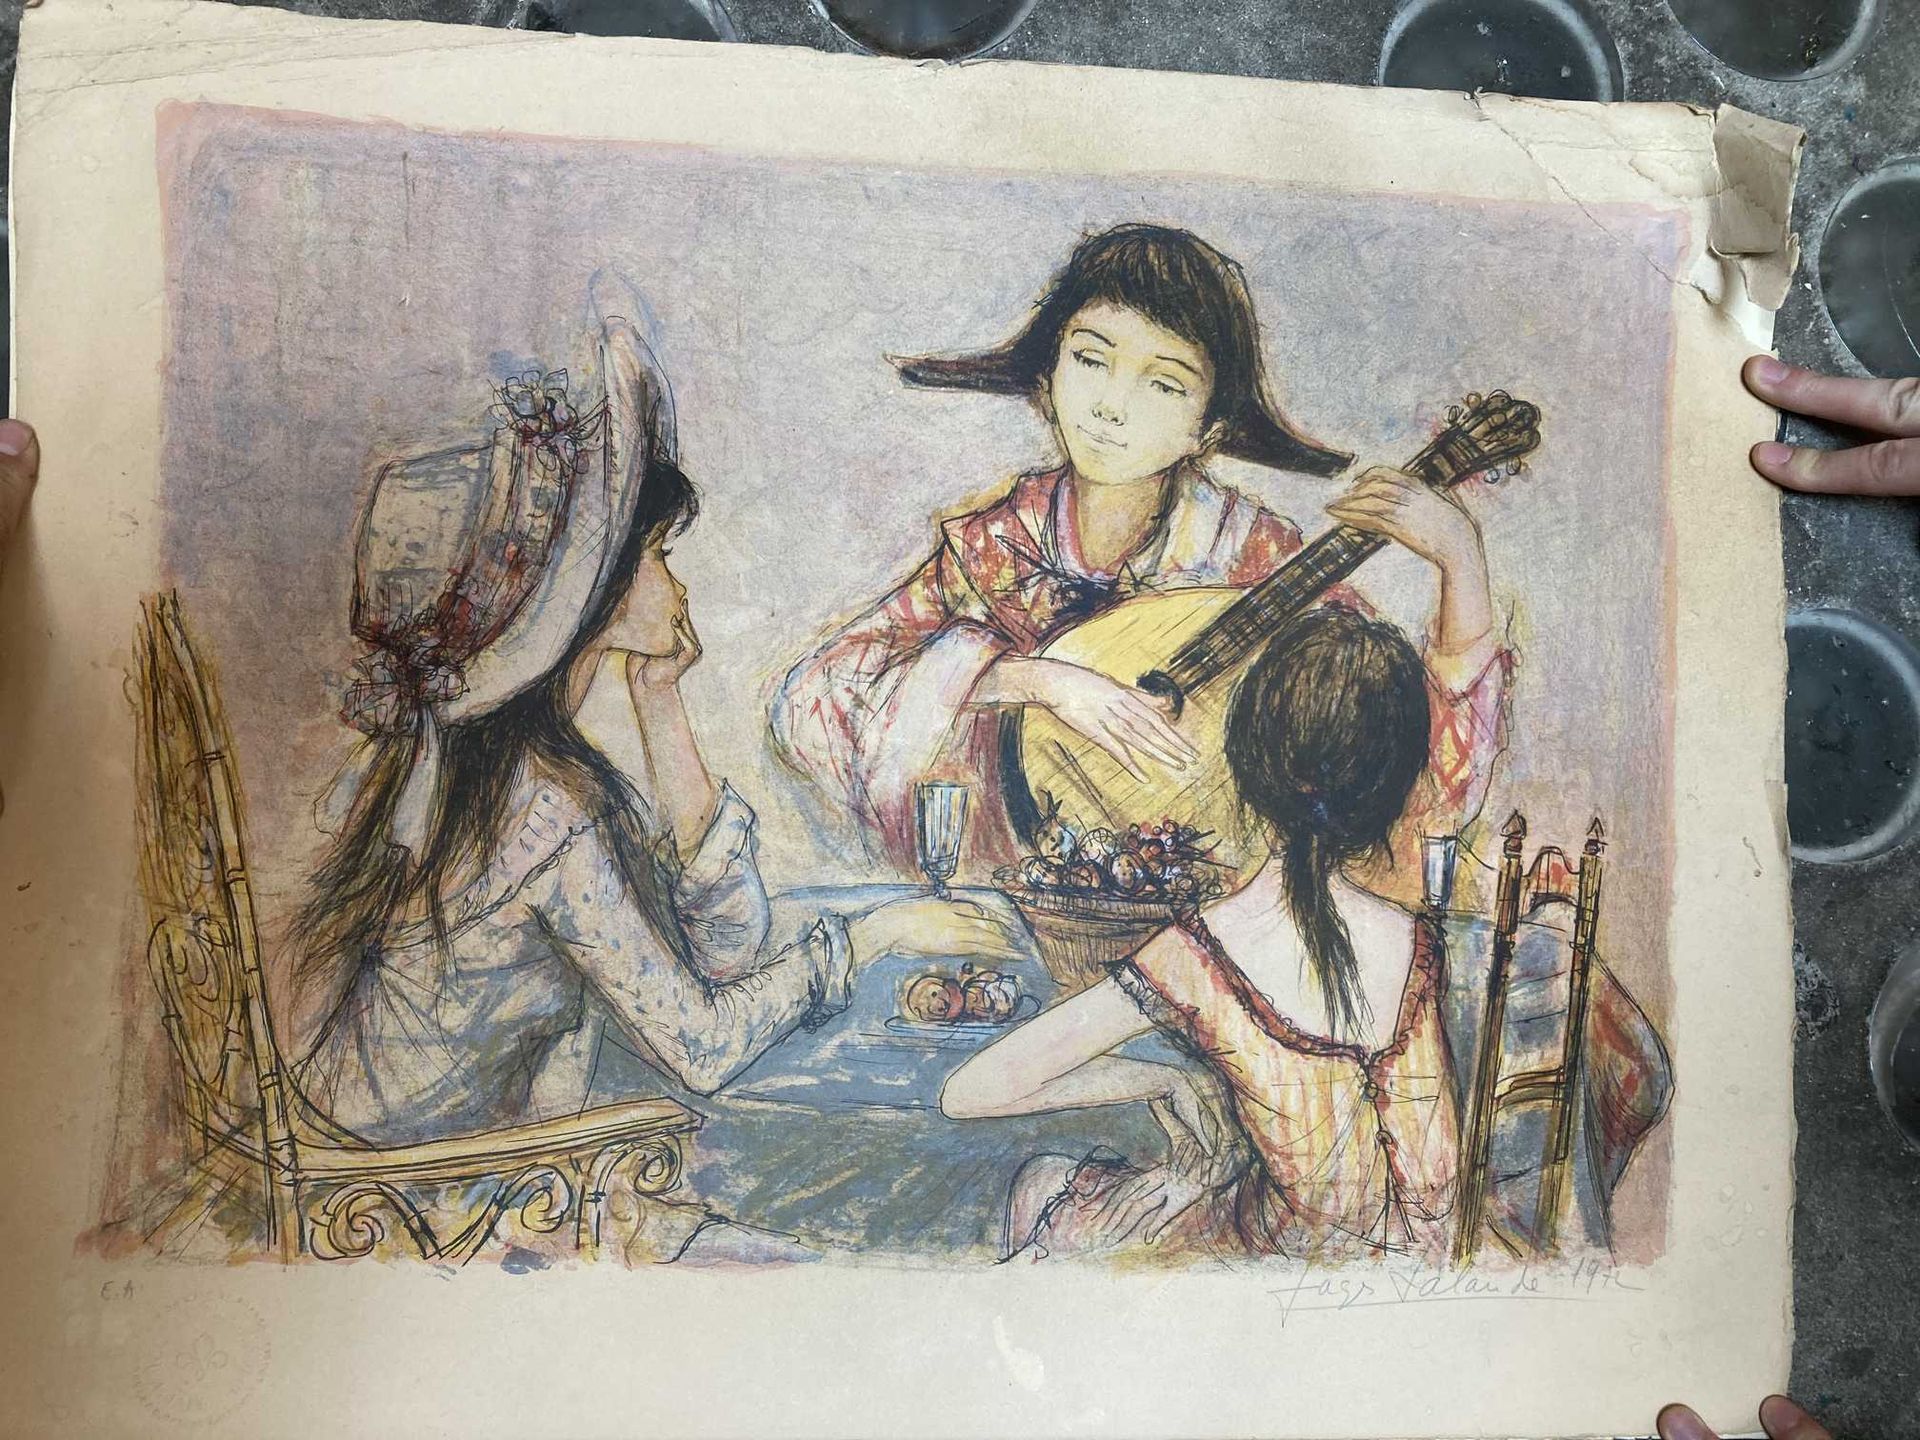 Null 彩色石版画，艺术家的证明

3个带着吉他的年轻女孩，用铅笔签名的Jacques Lalande 1973年（撕裂、湿润和折叠）。